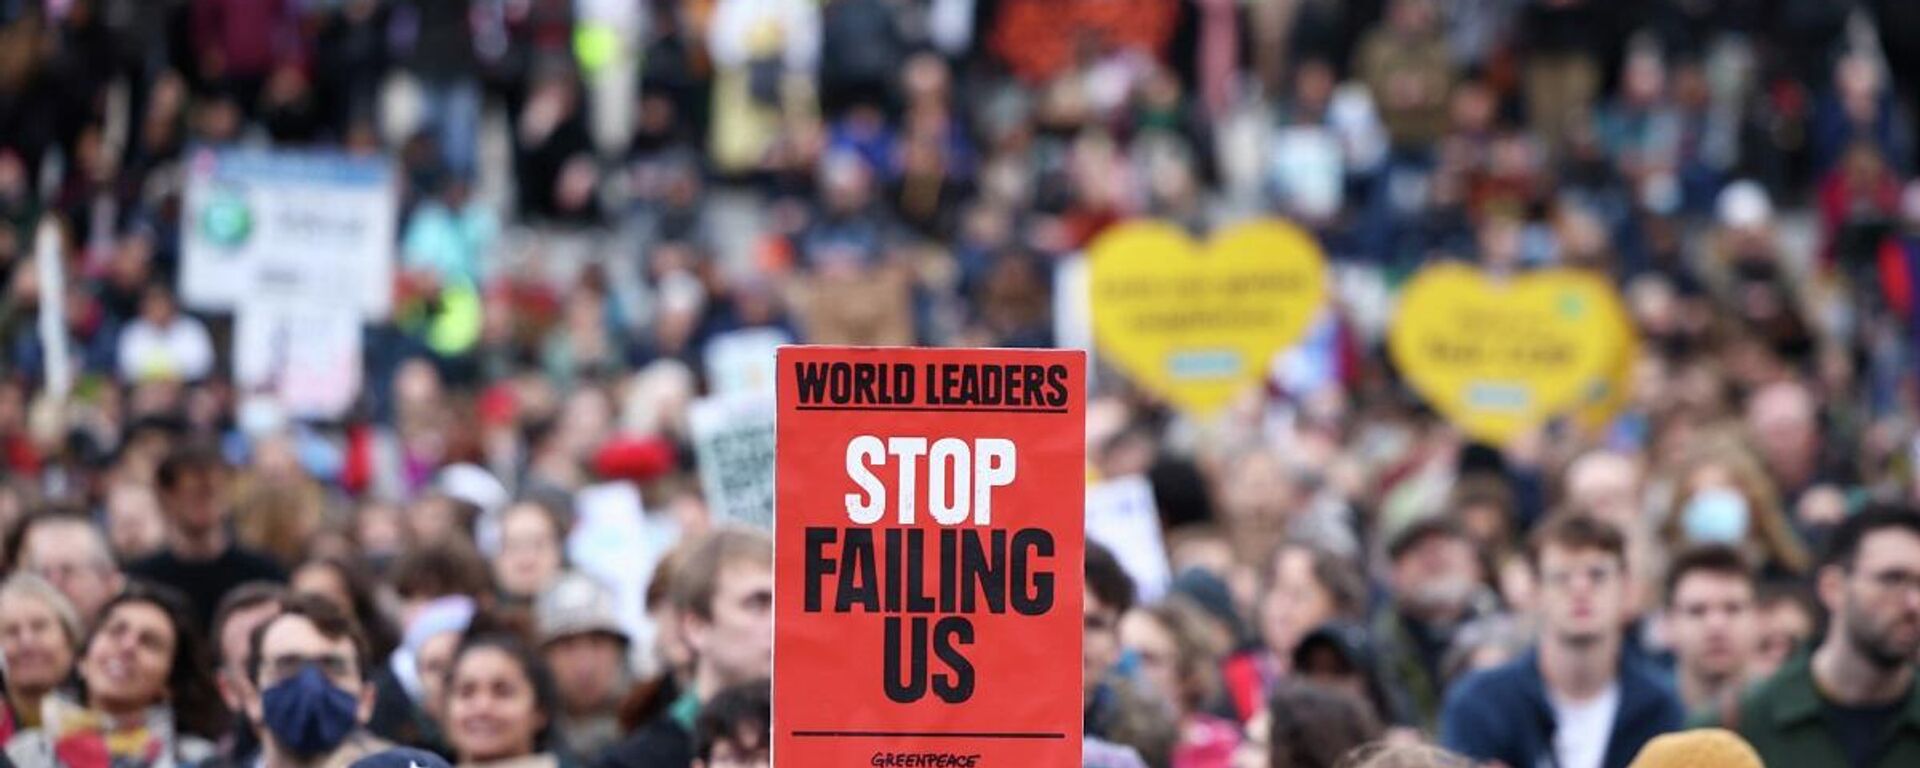 İngiltere'nin başkenti Londra'da on binlerce kişi, 6 Kasım Küresel İklim Eylem Günü'nde gösteri düzenleyerek, ülkelerin iklim kriziyle mücadelede daha güçlü politikalar uygulaması çağrısında bulundu. - Sputnik Türkiye, 1920, 06.11.2021